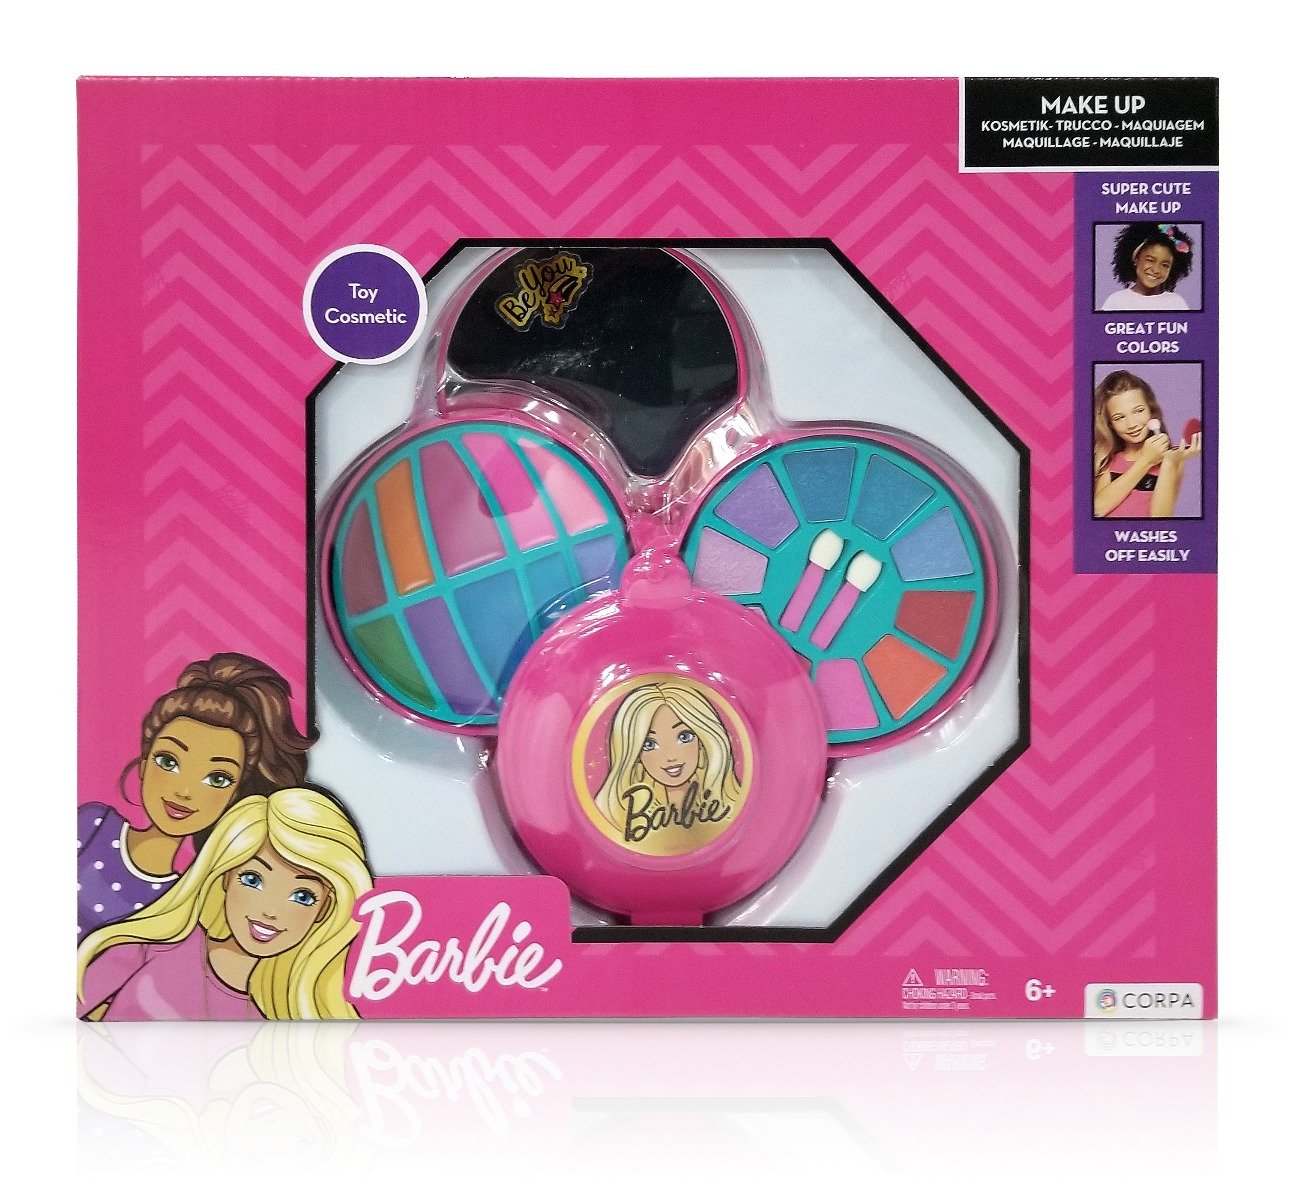 Set de cosmetice in caseta rotunda, cu 3 niveluri, Barbie Barbie imagine noua responsabilitatesociala.ro